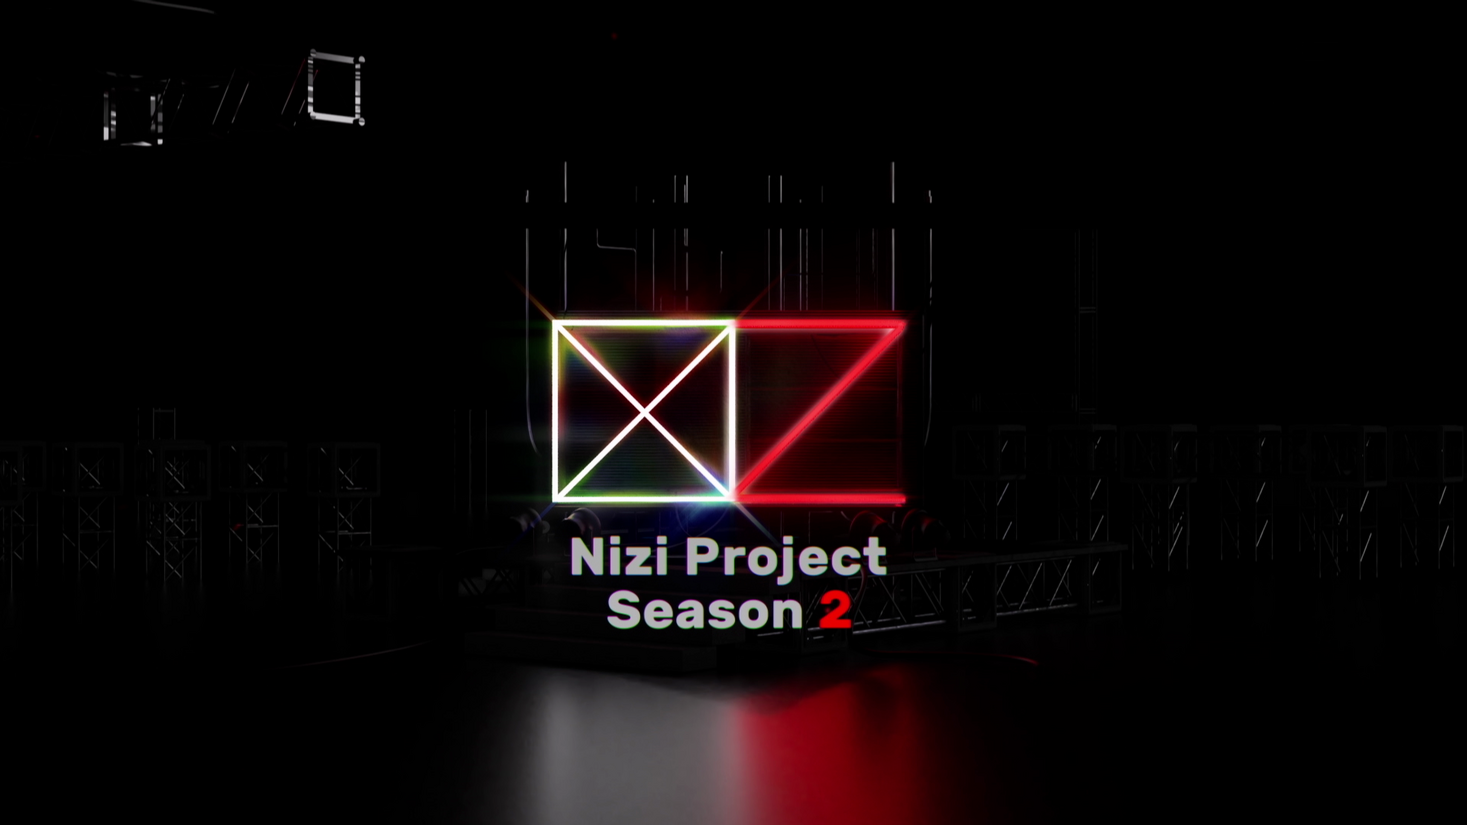 “니지 프로젝트” 대망의 오디션 프로그램 “니지 프로젝트 시즌2”가 드디어 시작되었습니다!  !